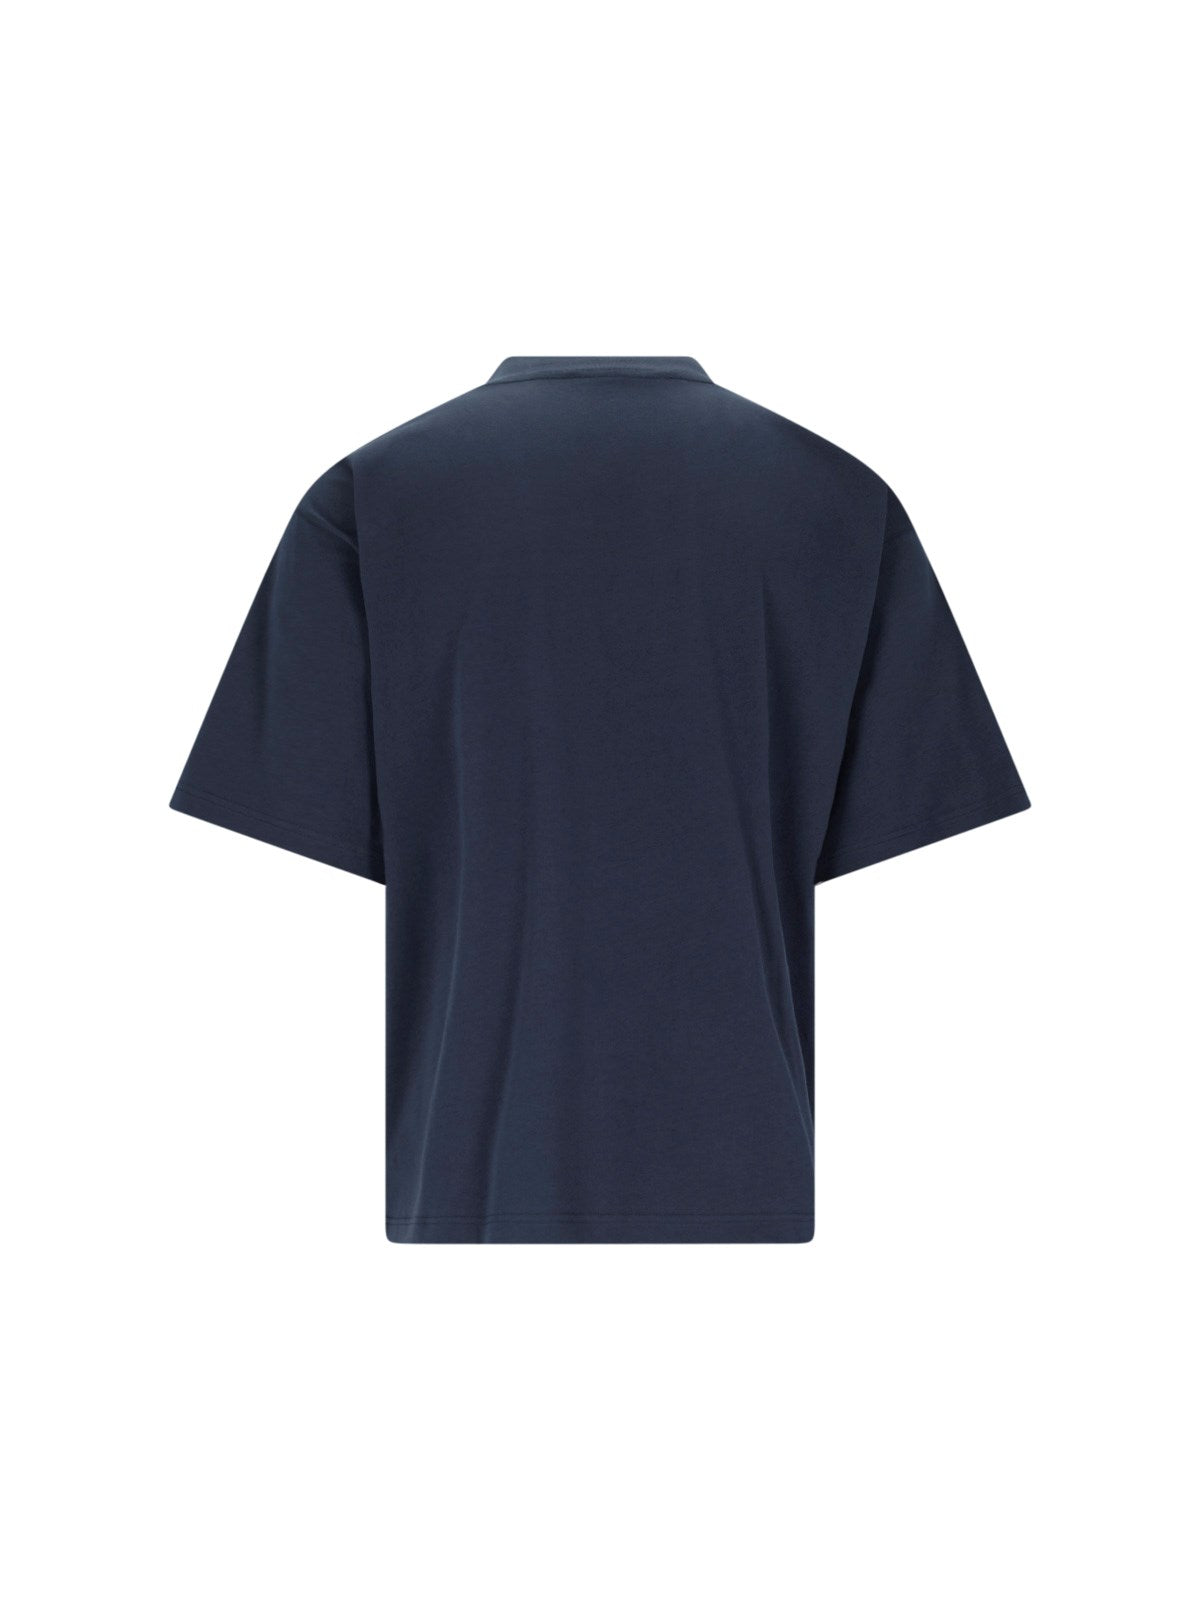 Marni T-Shirt logo-t-shirt-Marni-T-shirt logo Marni - realizzata in cotone biologico - blu, spalle scese, girocollo a costine, maniche corte, stampa logo bianco fronte, orlo dritto.-Dresso